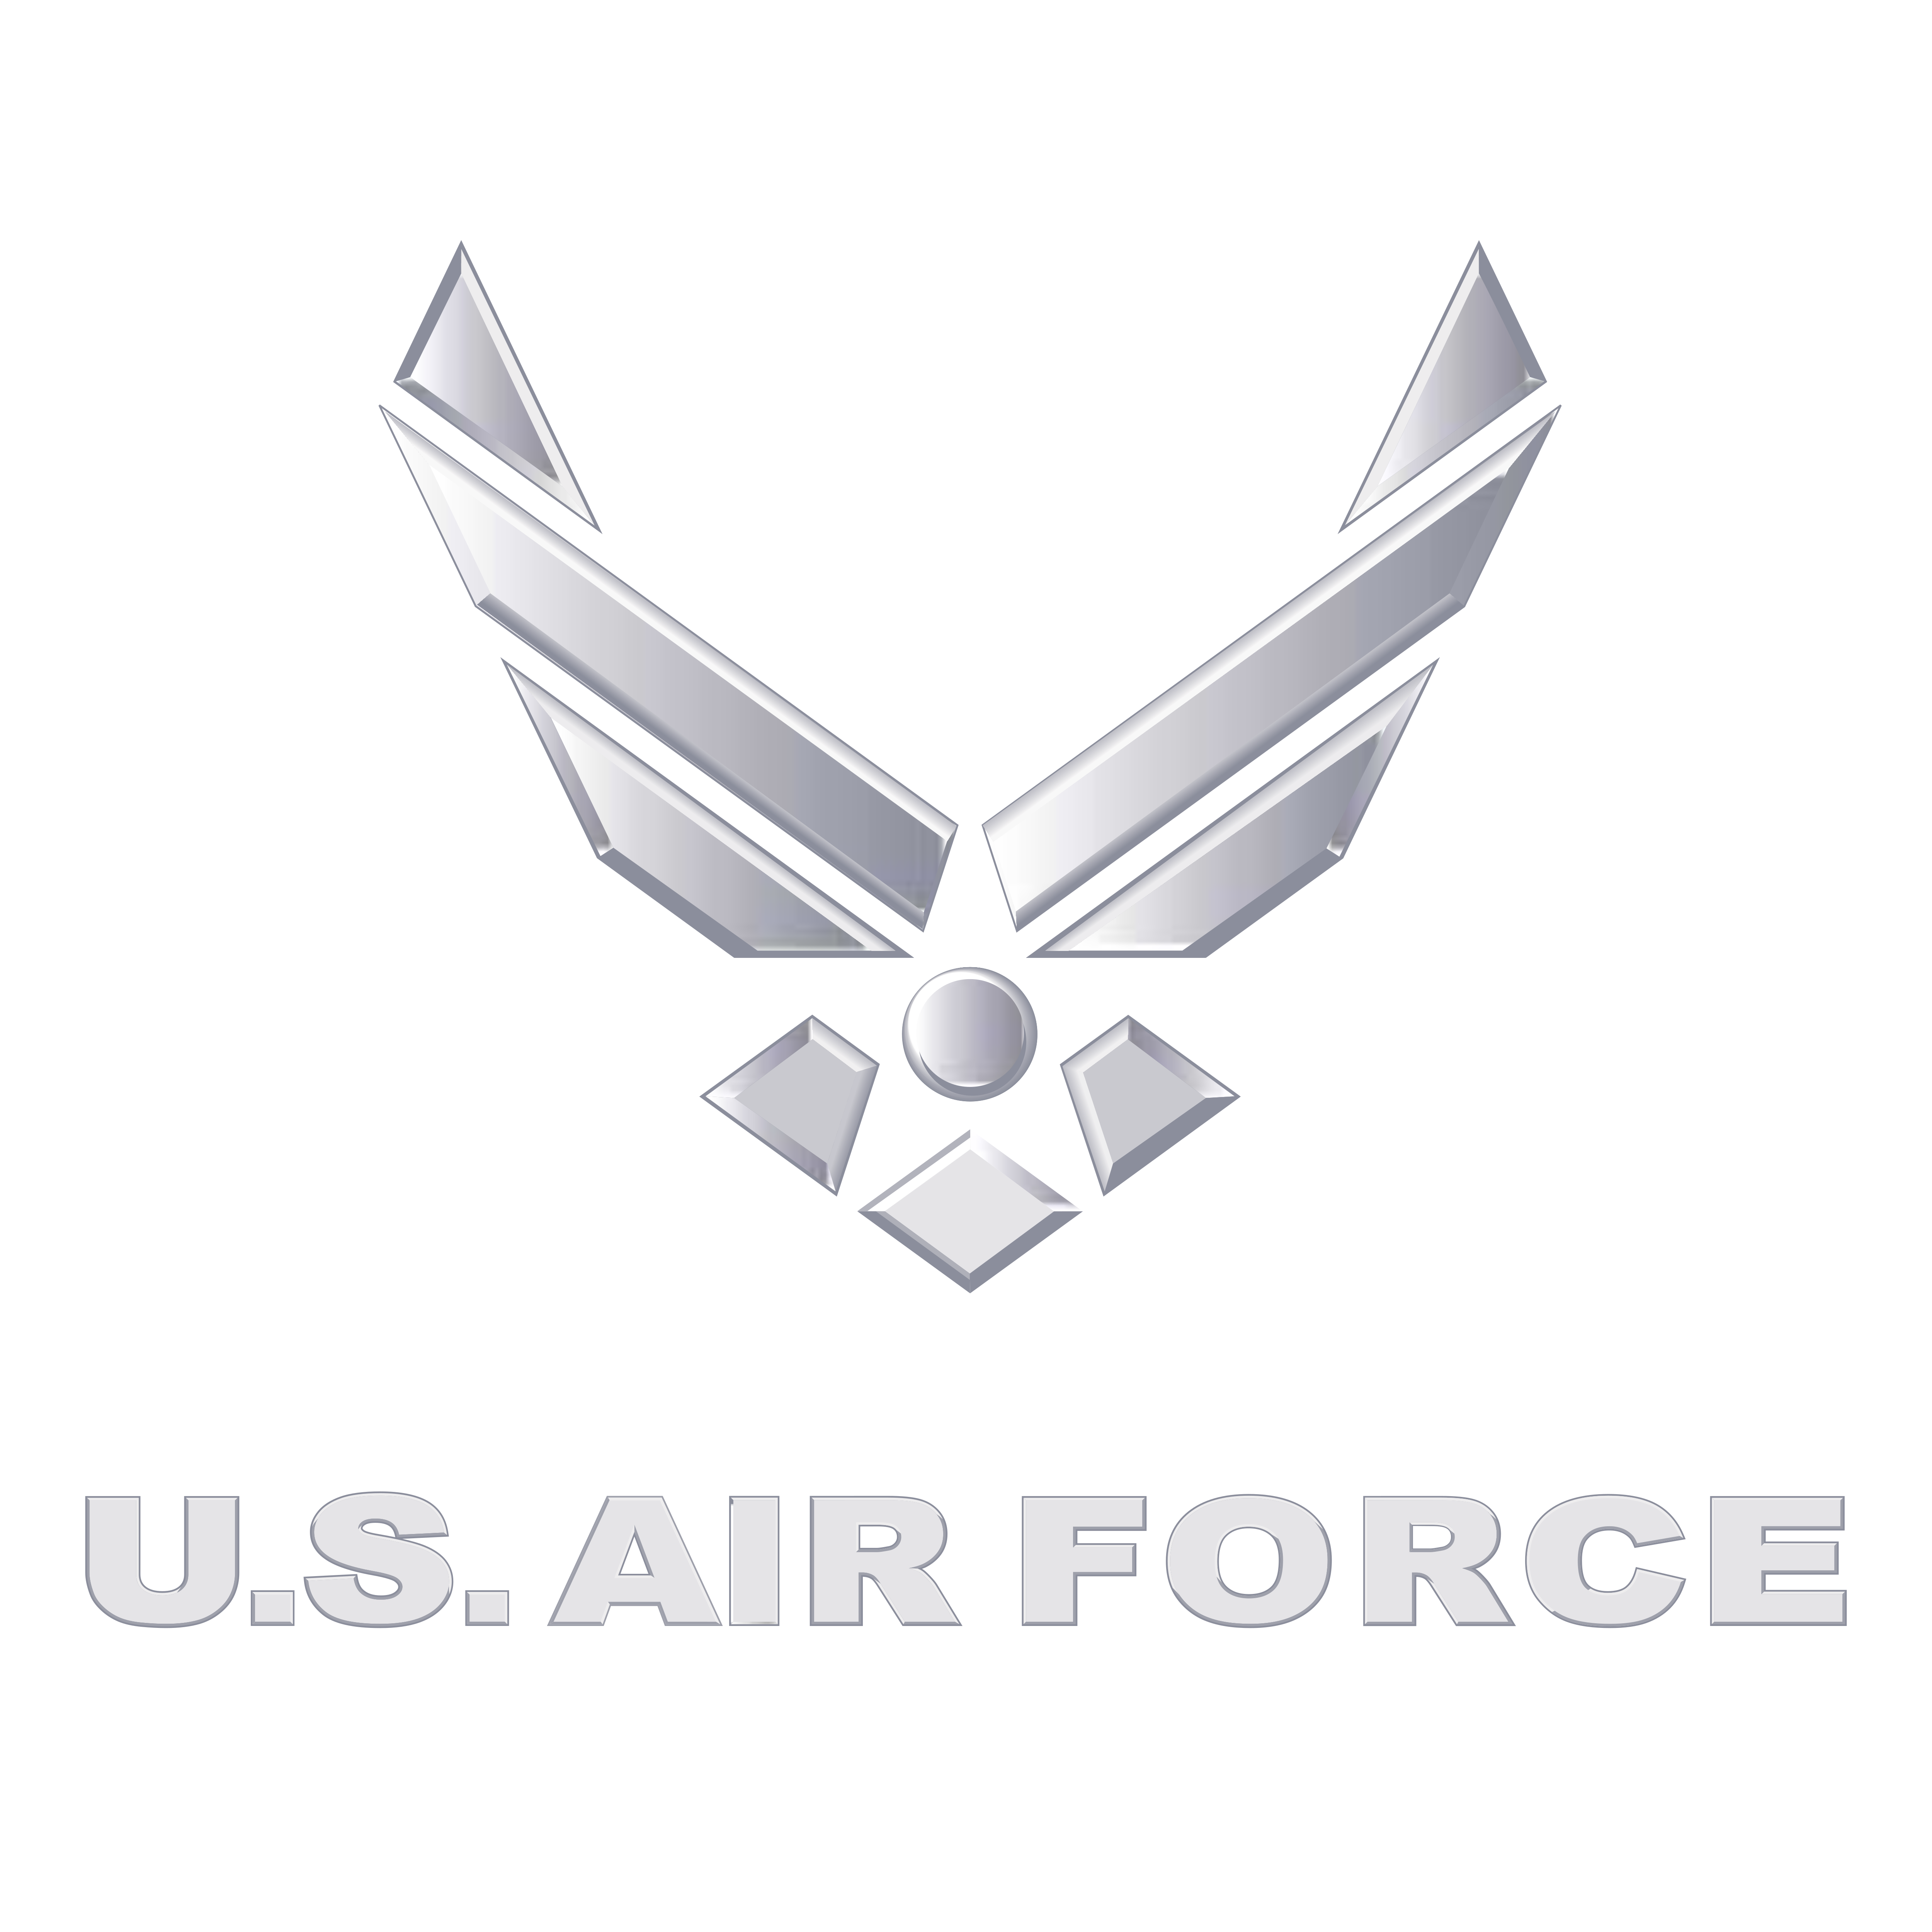 Download U.S. Air Force - Logos Download